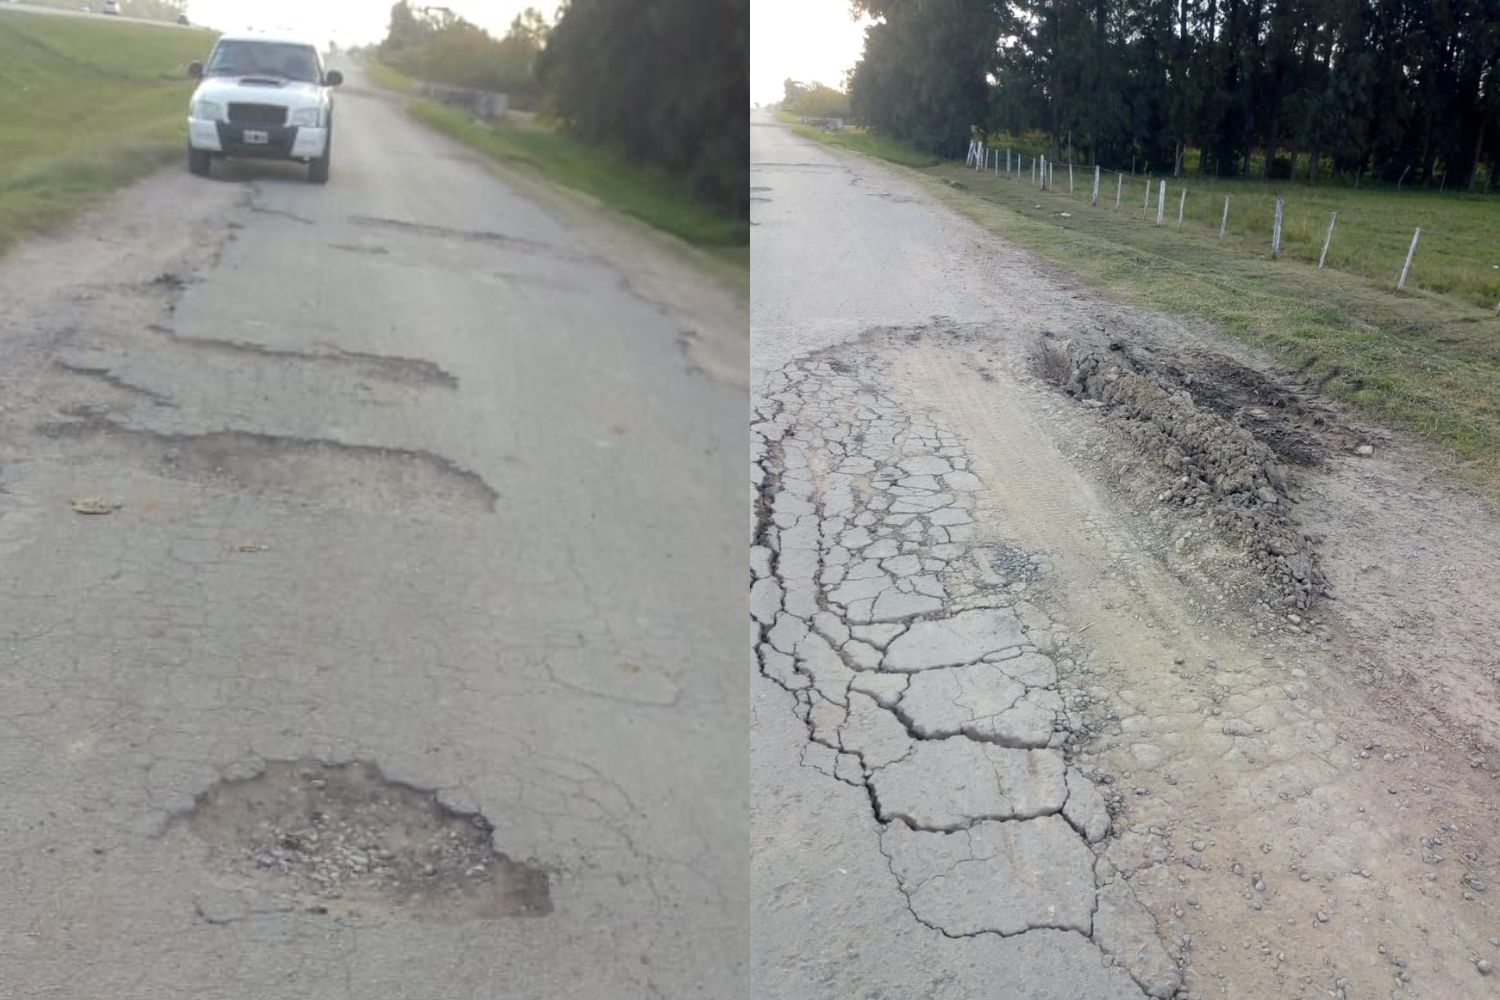 Reclaman reparaciones en la colectora de ruta 9, entre 191 y Río Tala: “Es un desastre, no podemos pasar más”